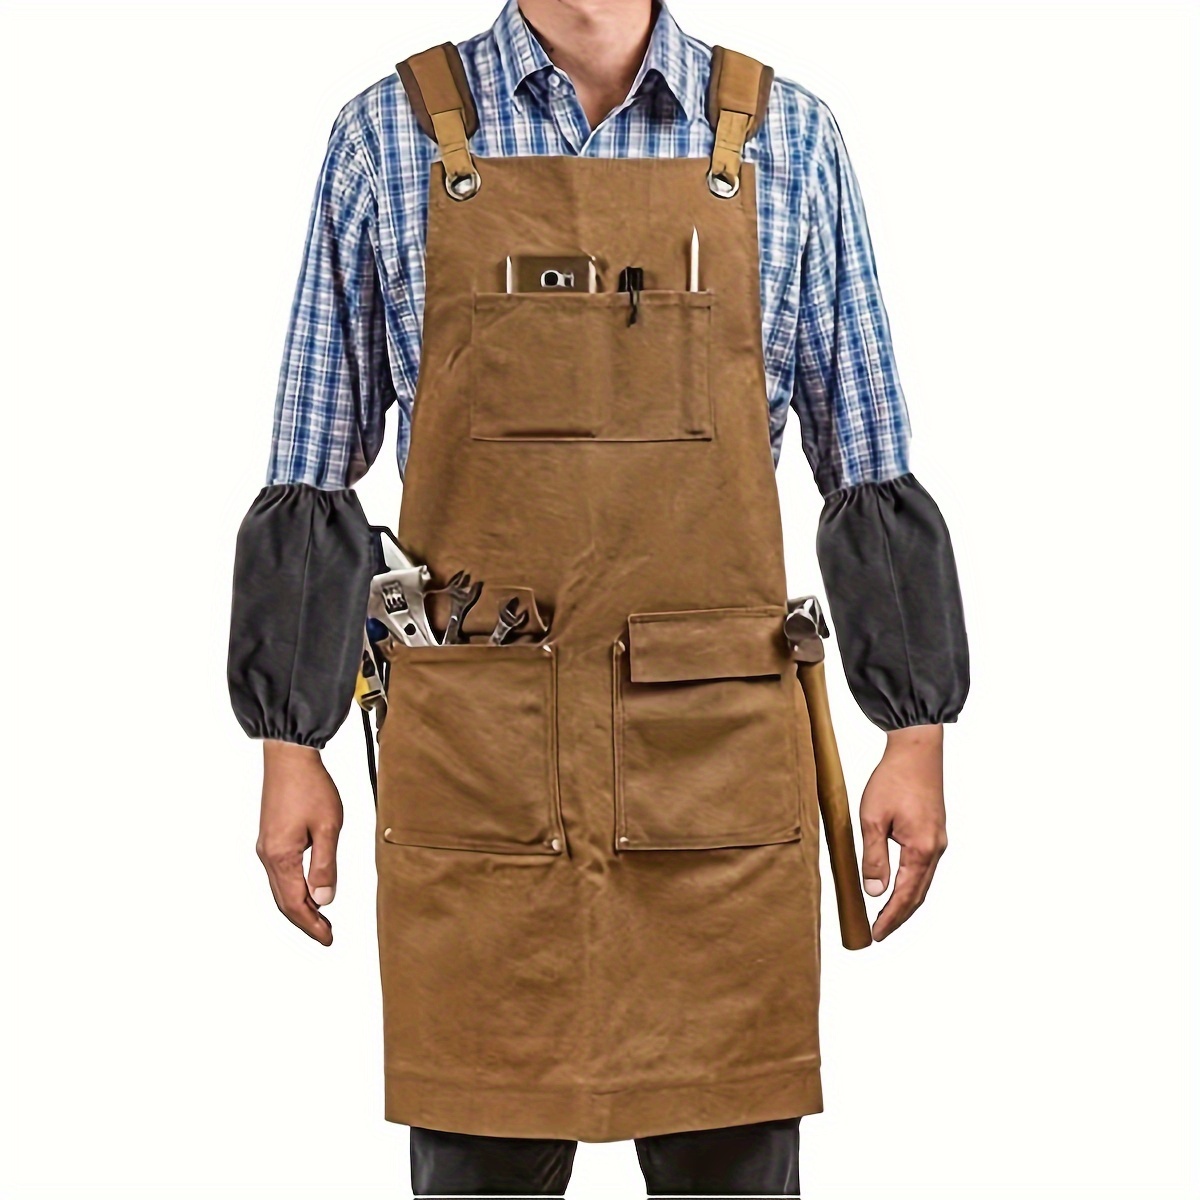 GOXAWEE 作業エプロン 男性用 ポケット付き 高耐久 ワックスキャンバス 木工エプロン - 防水 耐久性 調節可能なショルダーストラップ  大工、機械工、アーティスト用 1個